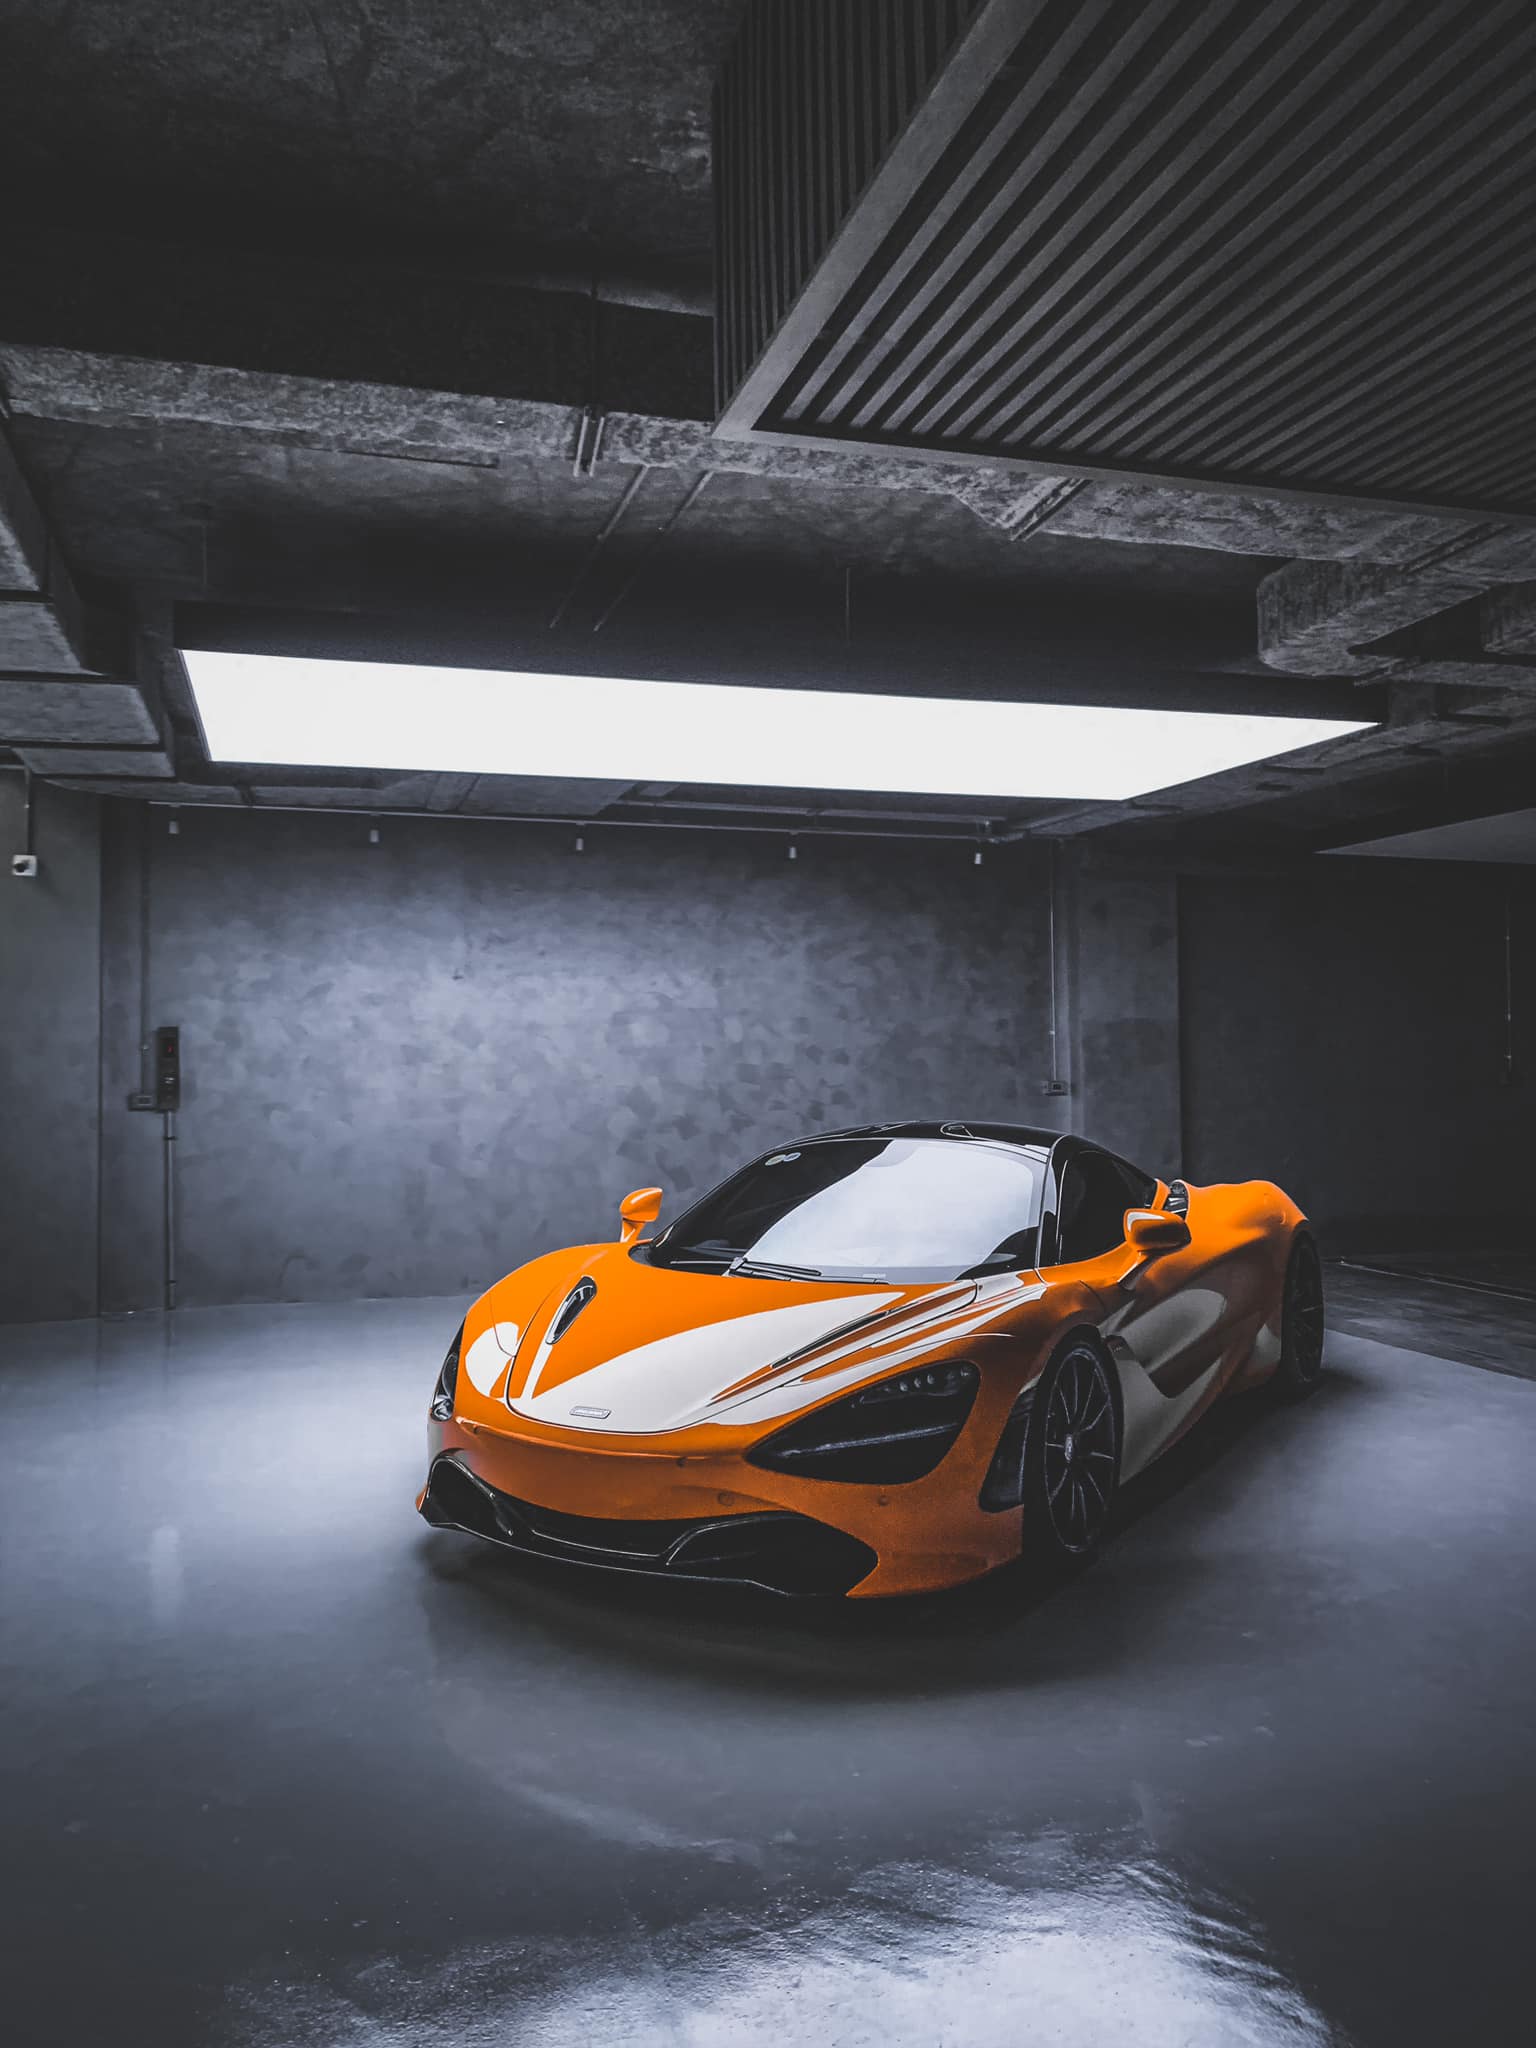 Nguyễn Quốc Cường là một trong những chủ nhân hạnh phúc sở hữu chiếc siêu xe McLaren đình đám này. Hãy cùng chiêm ngưỡng những khoảnh khắc tuyệt vời của anh ấy khi thư giãn và khám phá đường ô tô cùng chiếc xe đắt giá này.